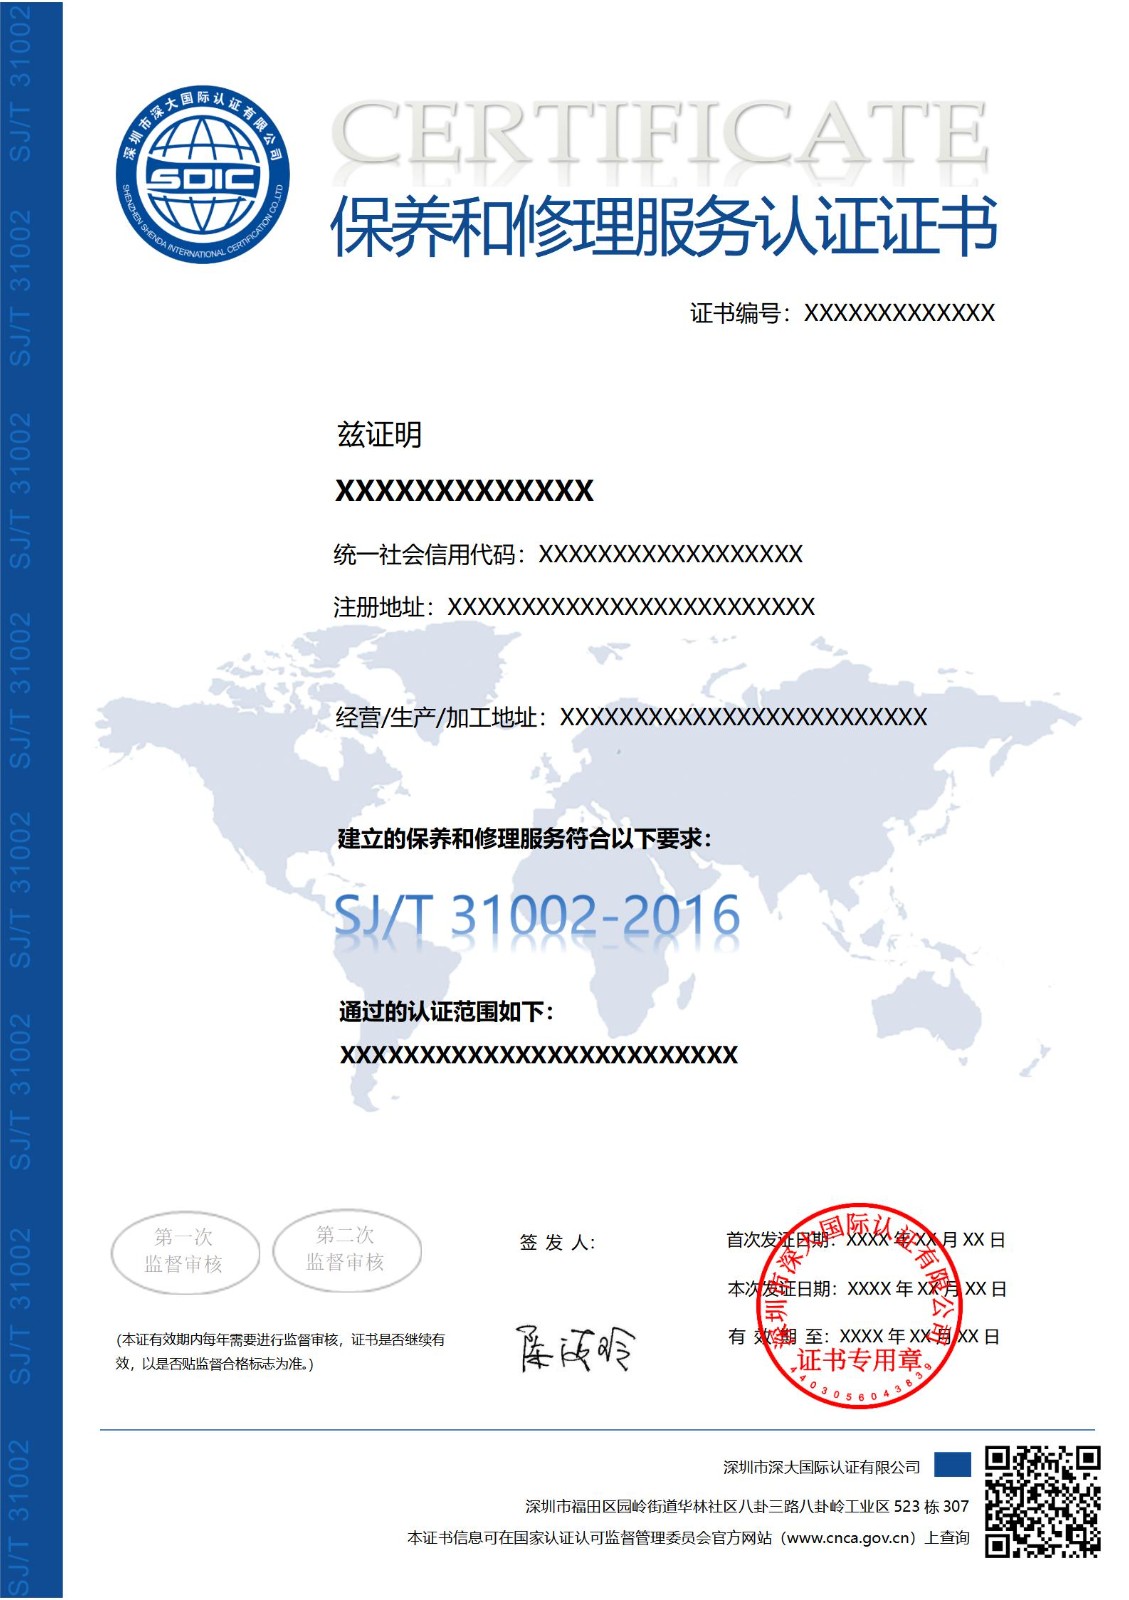 SJ/T 31002保养和修理服务认证证书